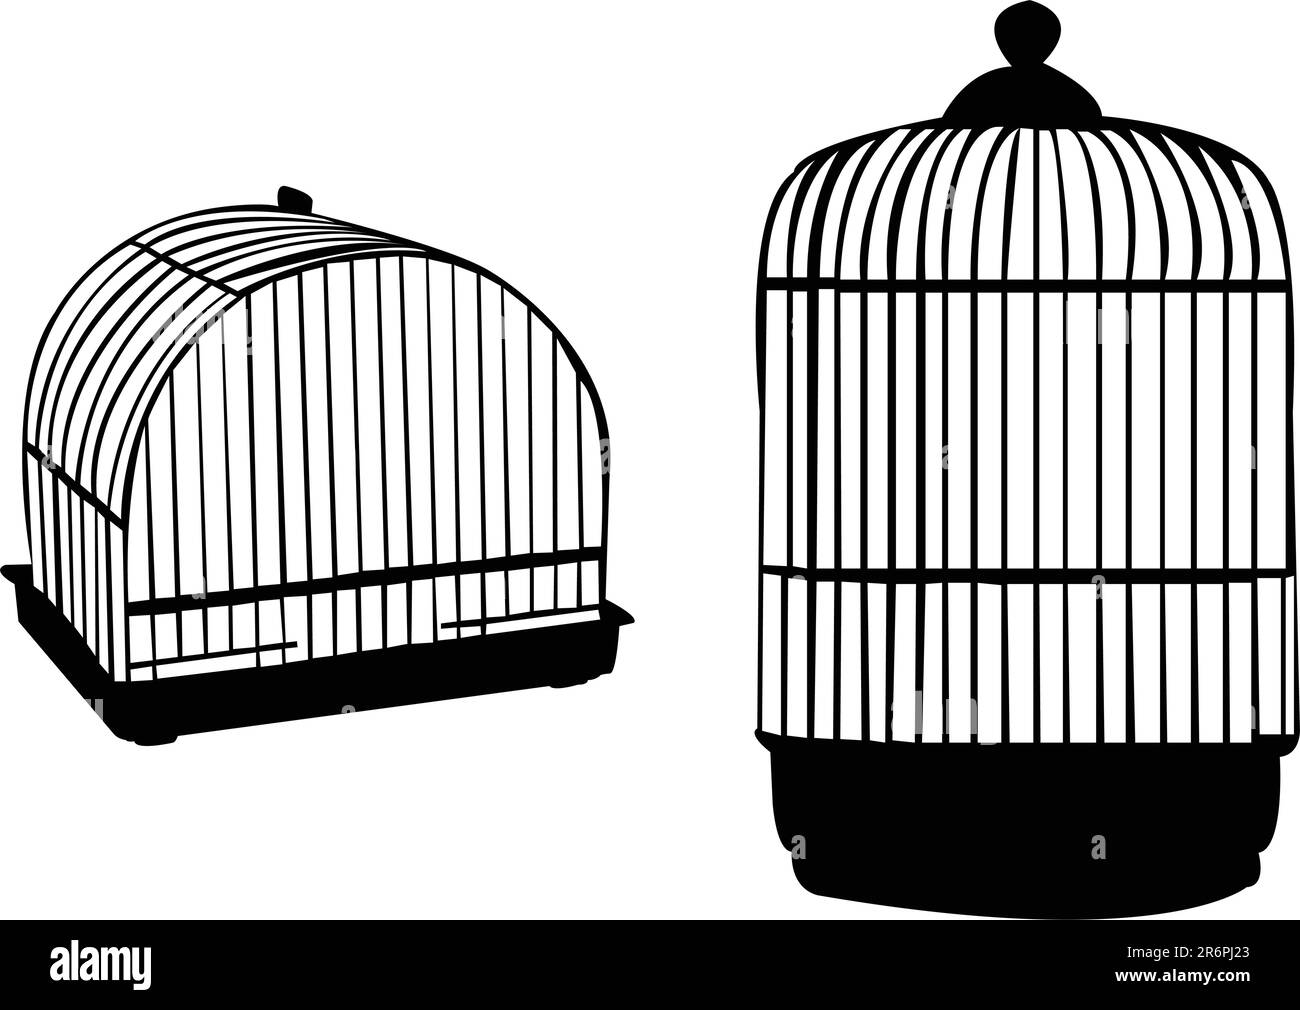 birdcage silhouette - vector Stock Vector